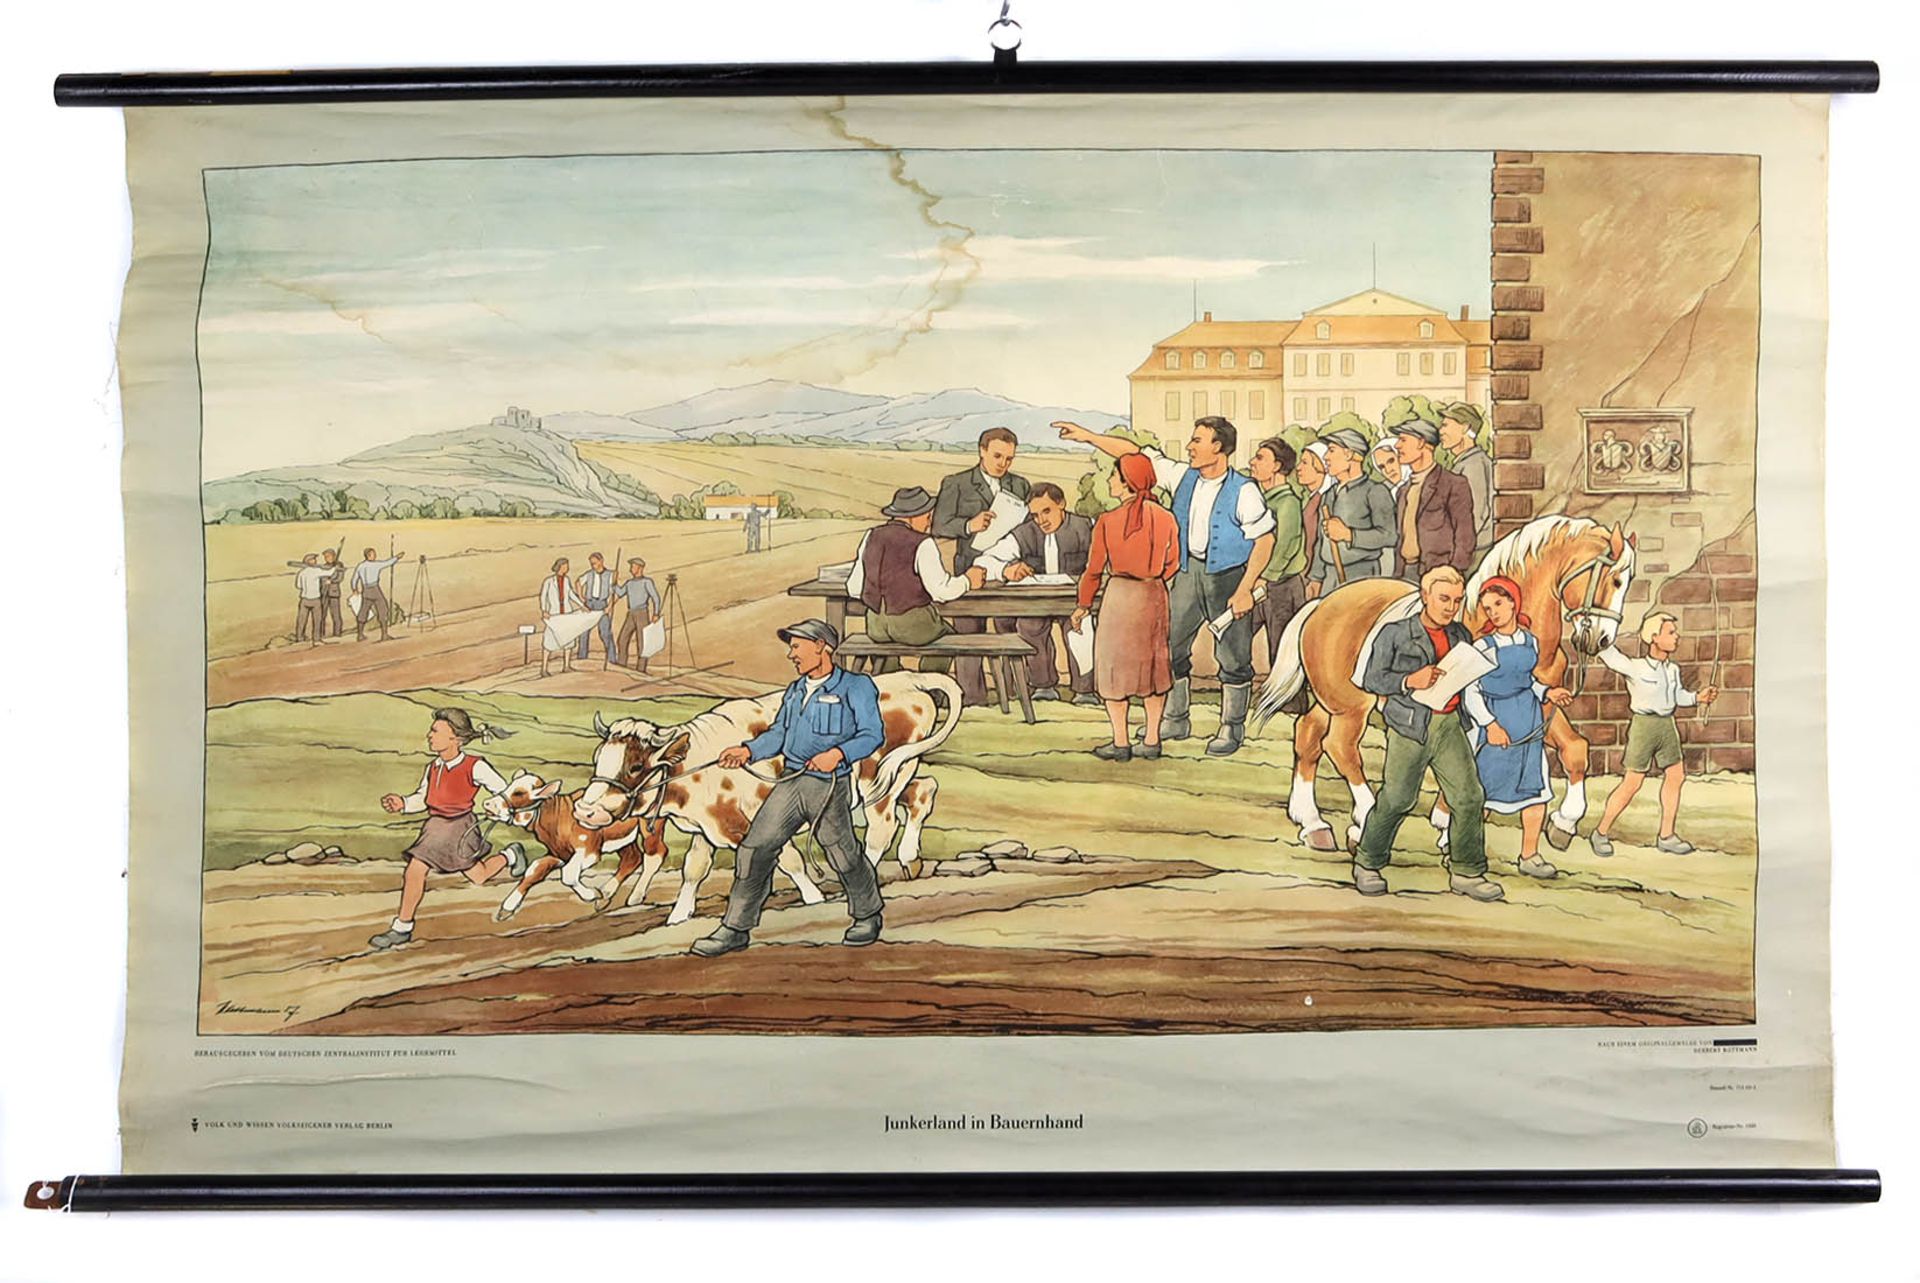 Schulkarte *Junkerland in Bauernhand*farbig lithographierte Rollkarte des Volk und Wis